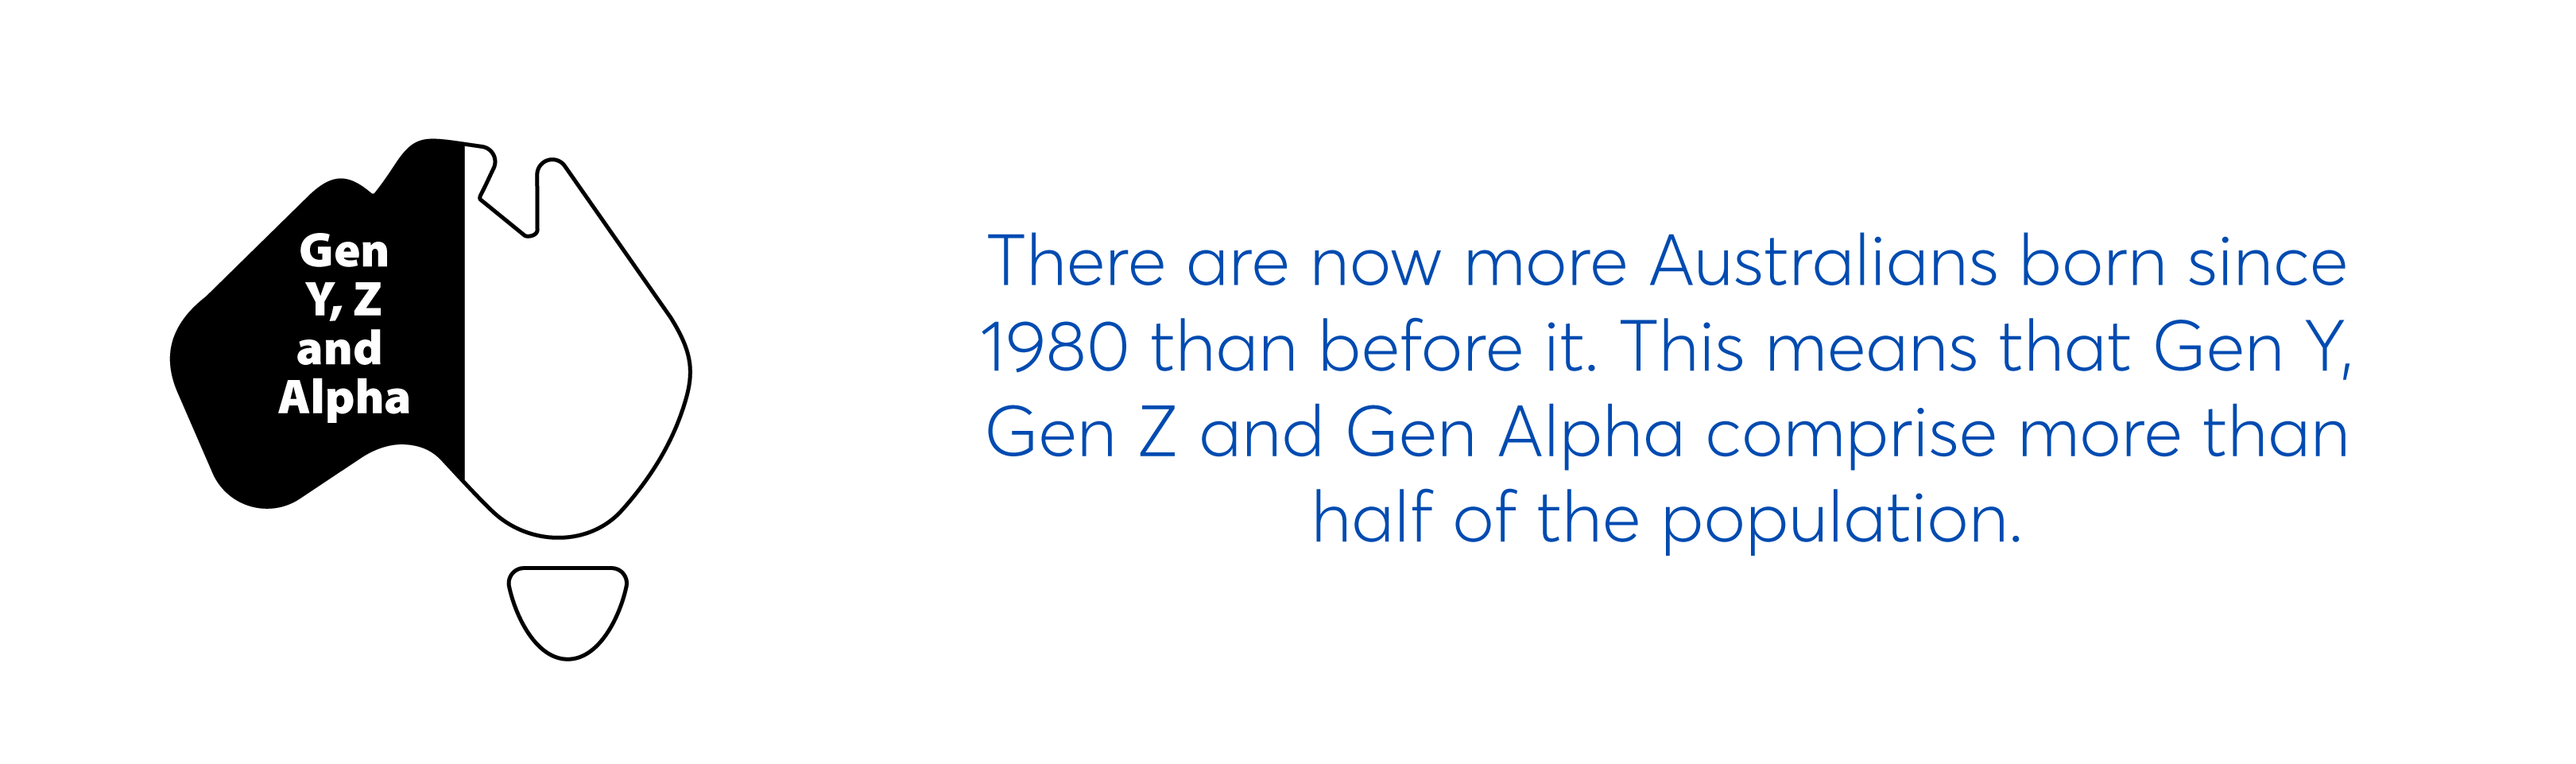 Gen Y, Z & Alpha make up more than half the population